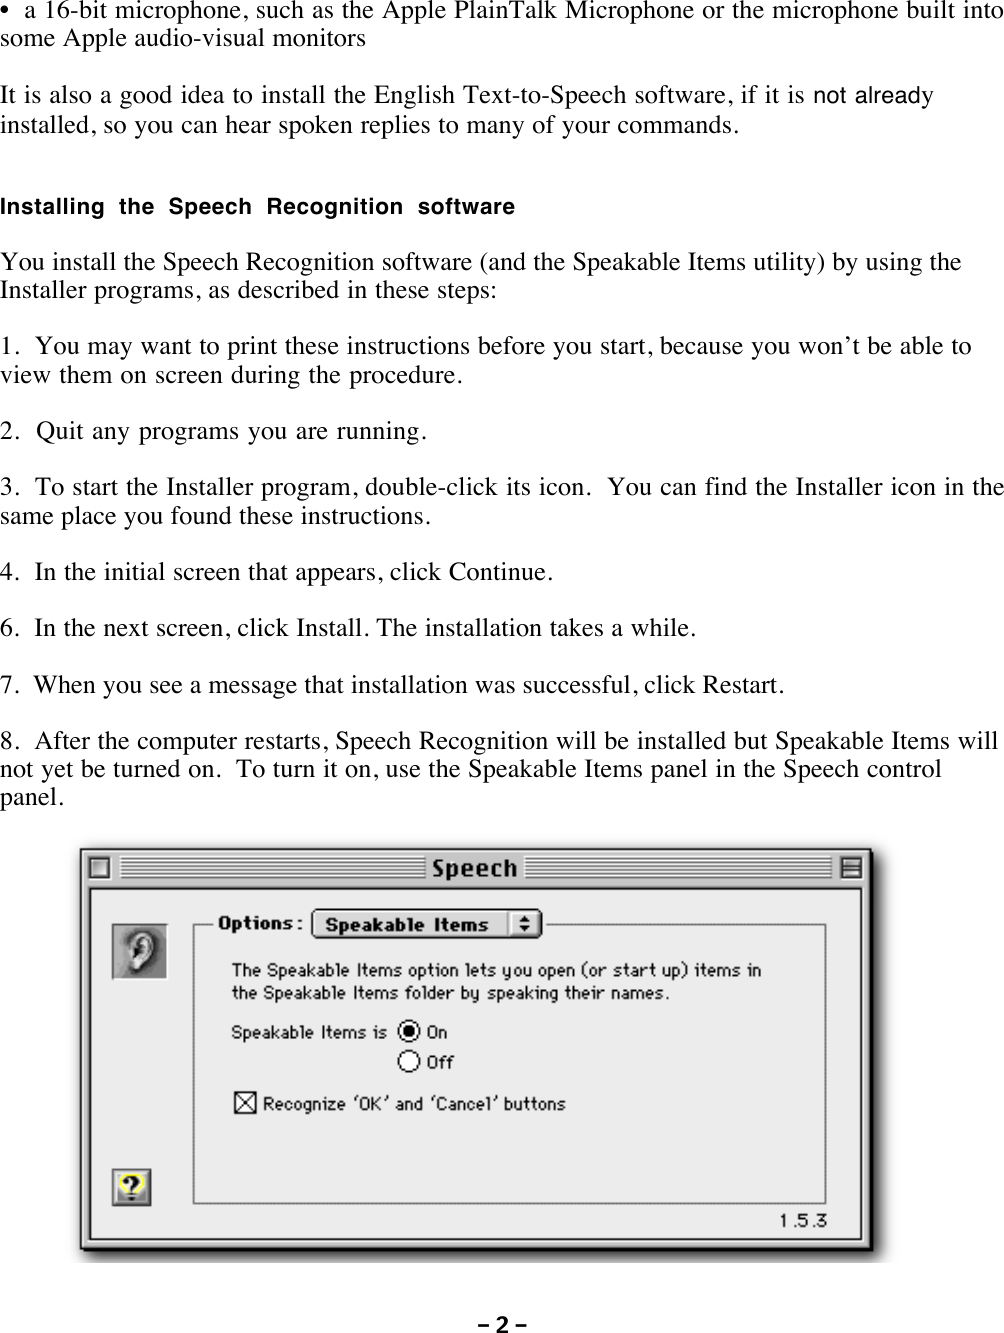 apple mac speech recognition